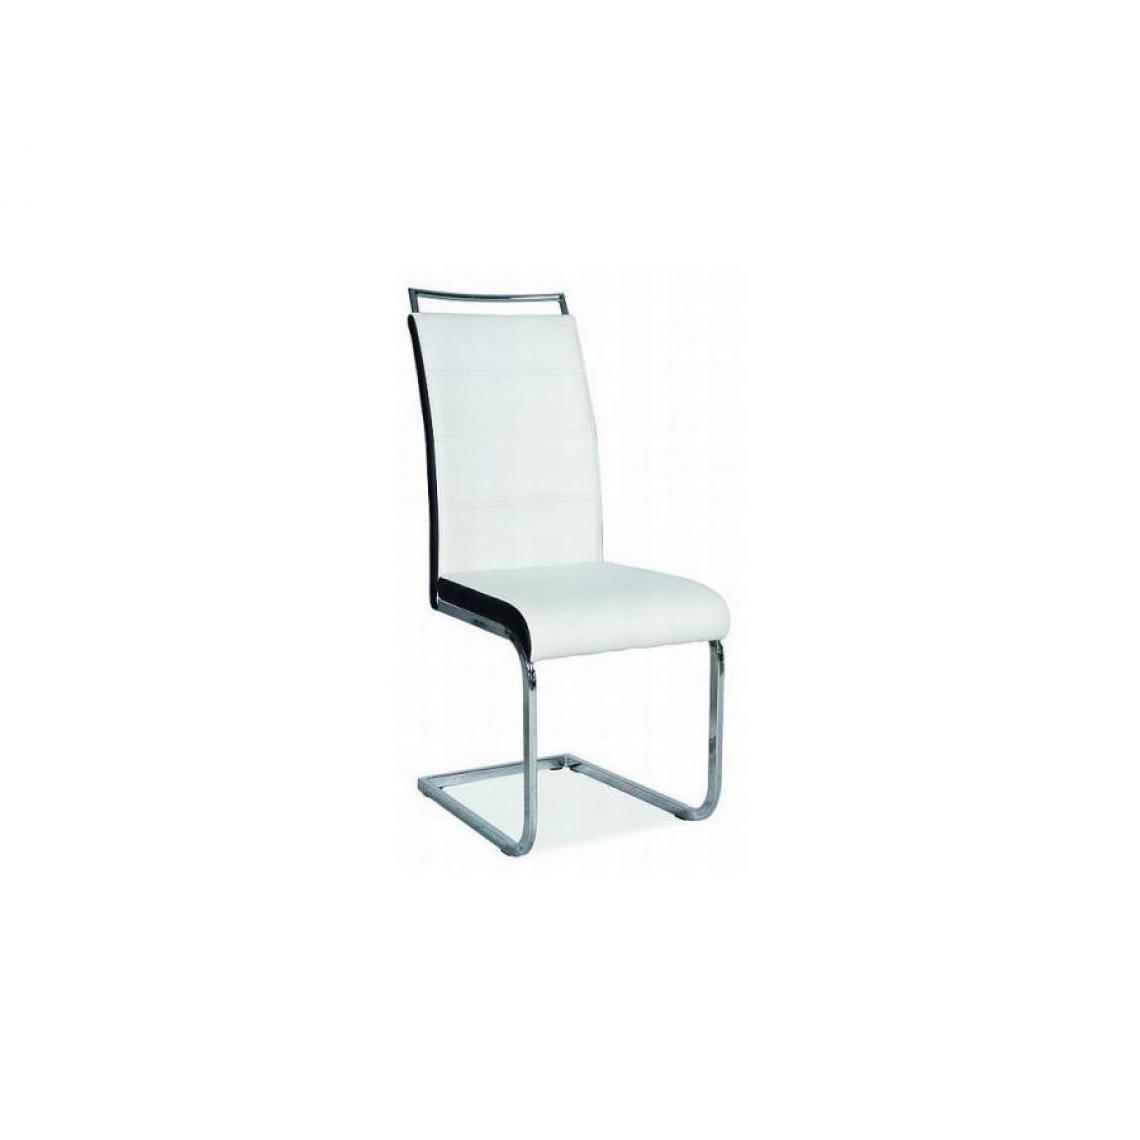 Hucoco - SHYRA | Chaise bicolore style moderne | Dimensions 102x41x42 cm | Rembourrage en cuir écologique | Chaise salle à manger - Blanc - Chaises